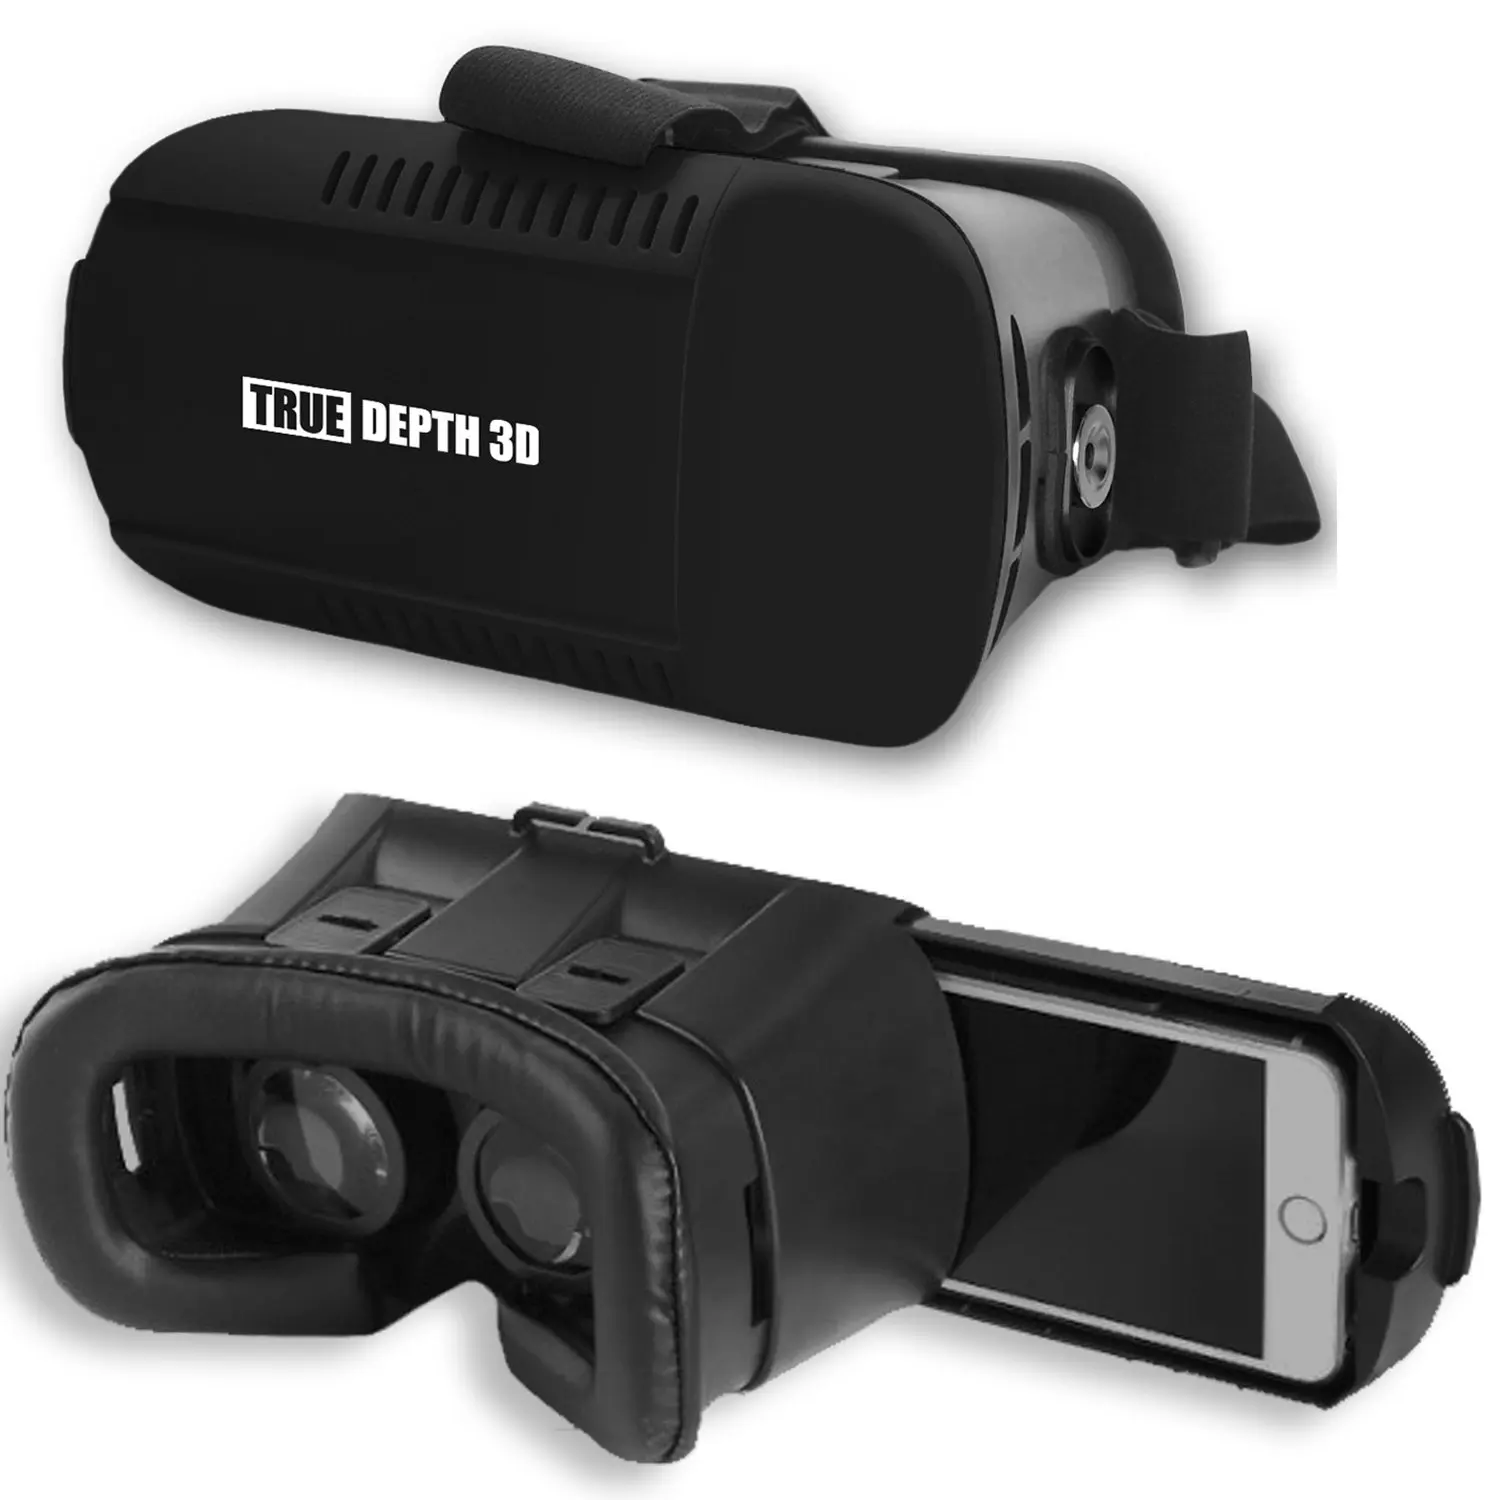 True depth камера что это. Depth 3d VR.